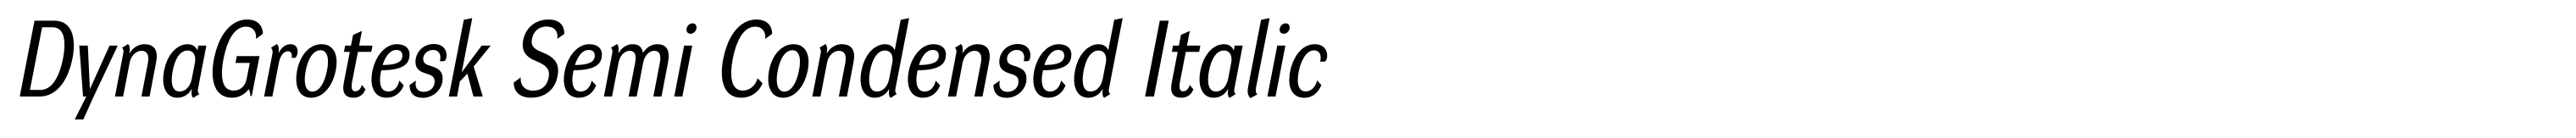 DynaGrotesk Semi Condensed Italic